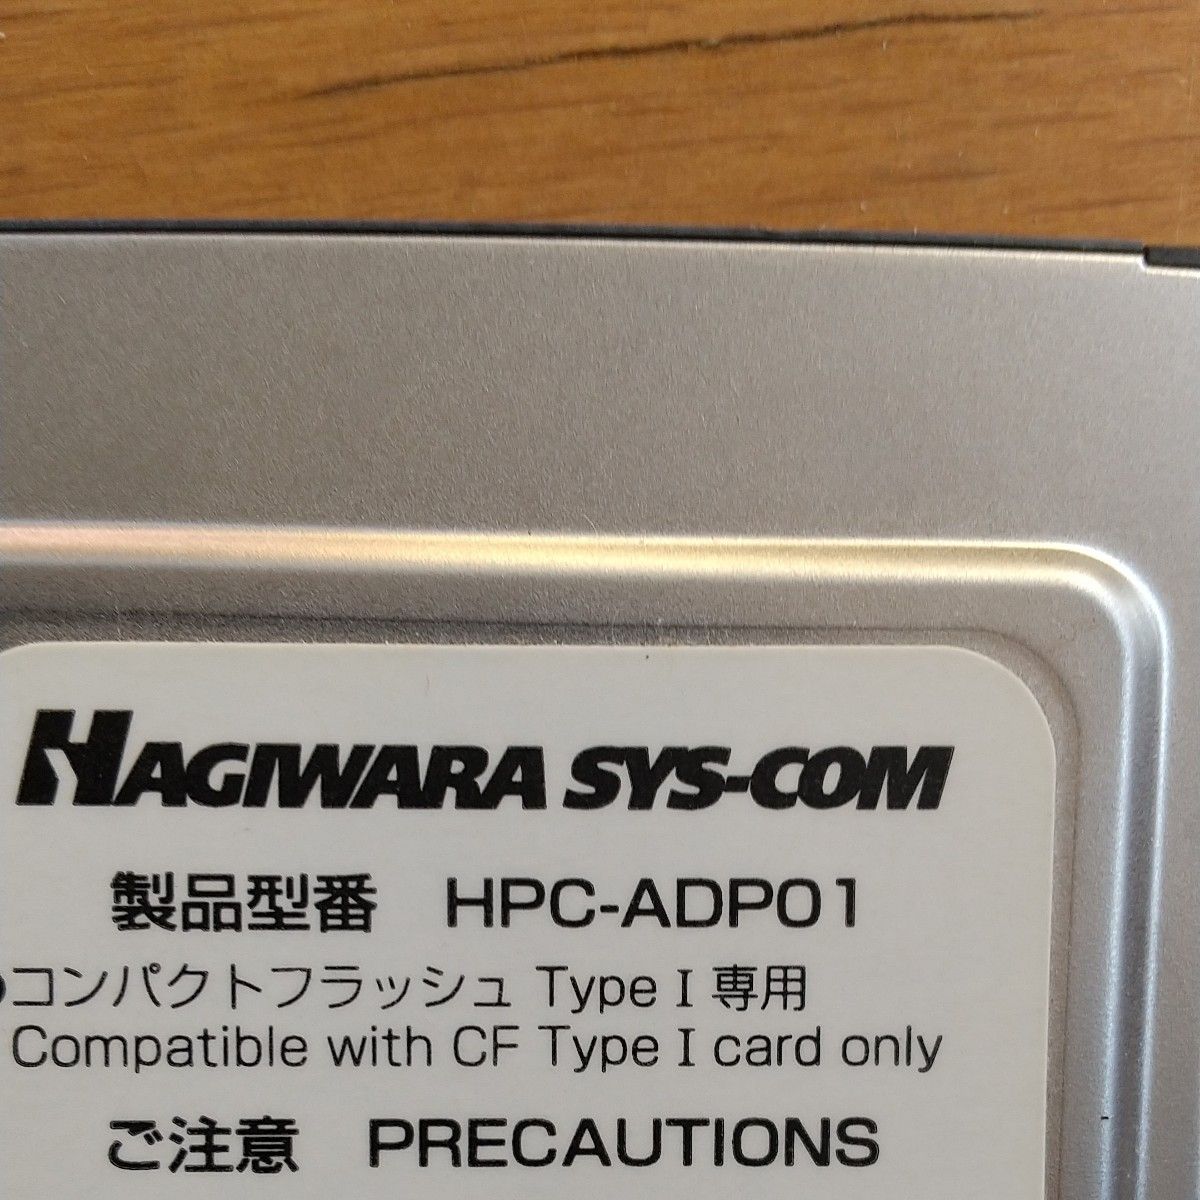 Hagiwara   コンパクトフラッシュをpcカードサイズに変換するアダプタ-です。